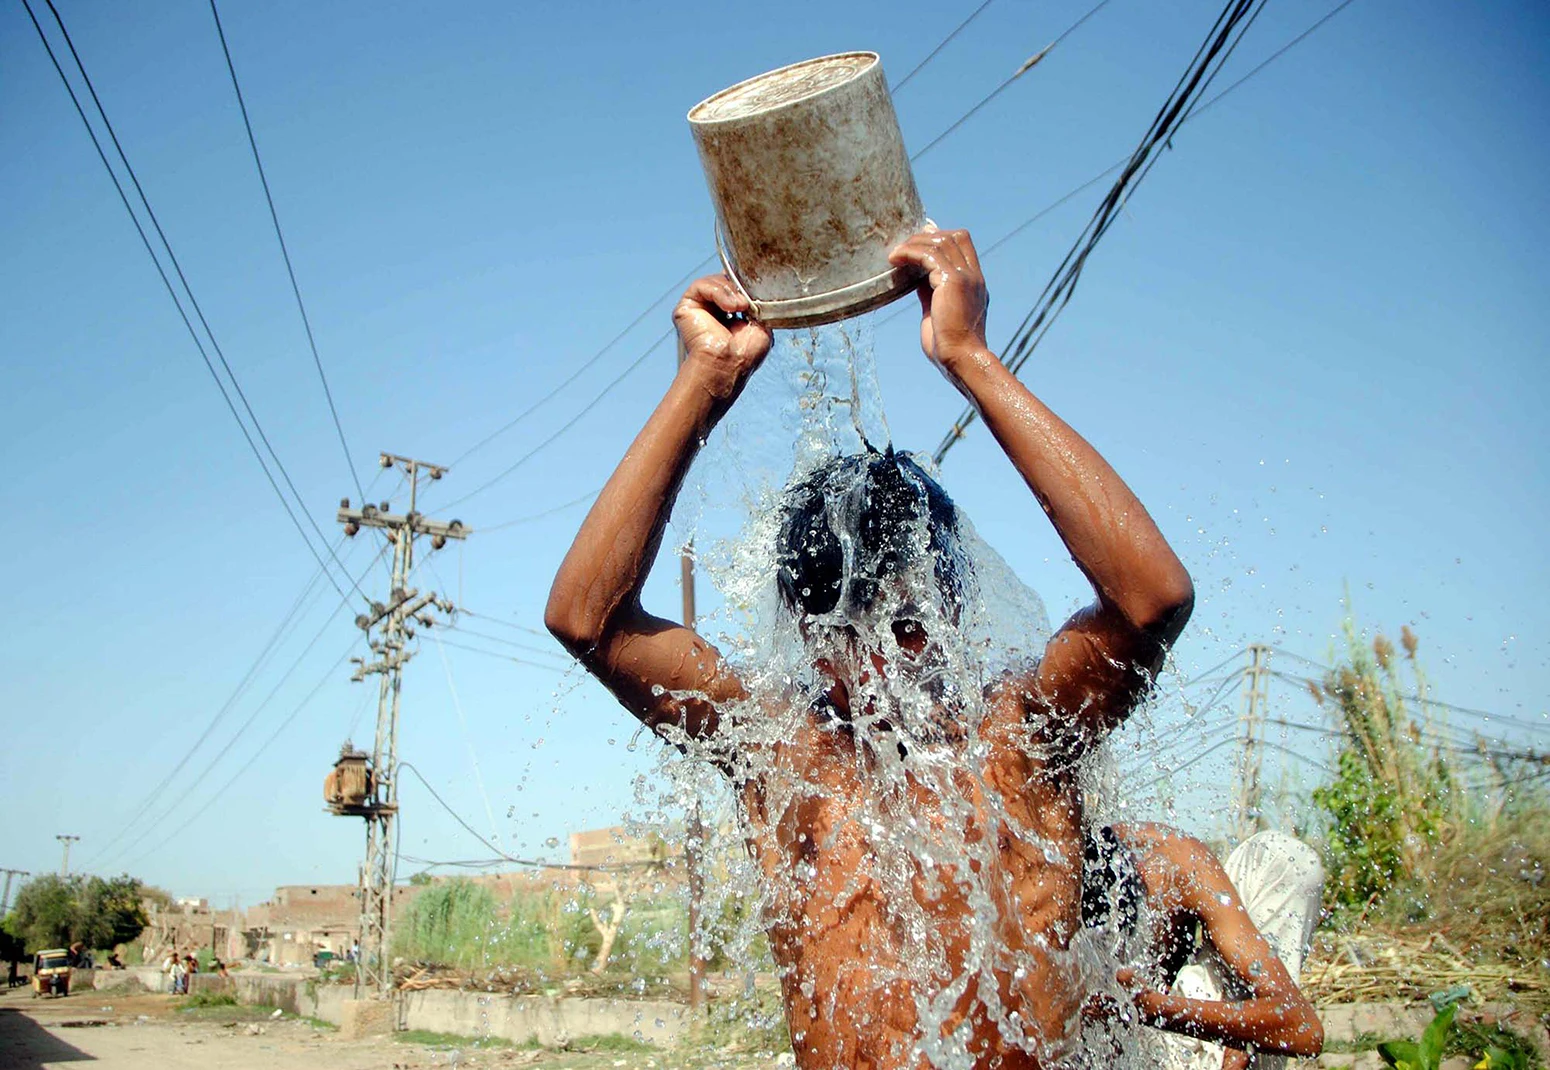 Pakistanis Hyderabadis 4. aprillil 2022 kallas noormees end kuumalaine ajal veega üle.